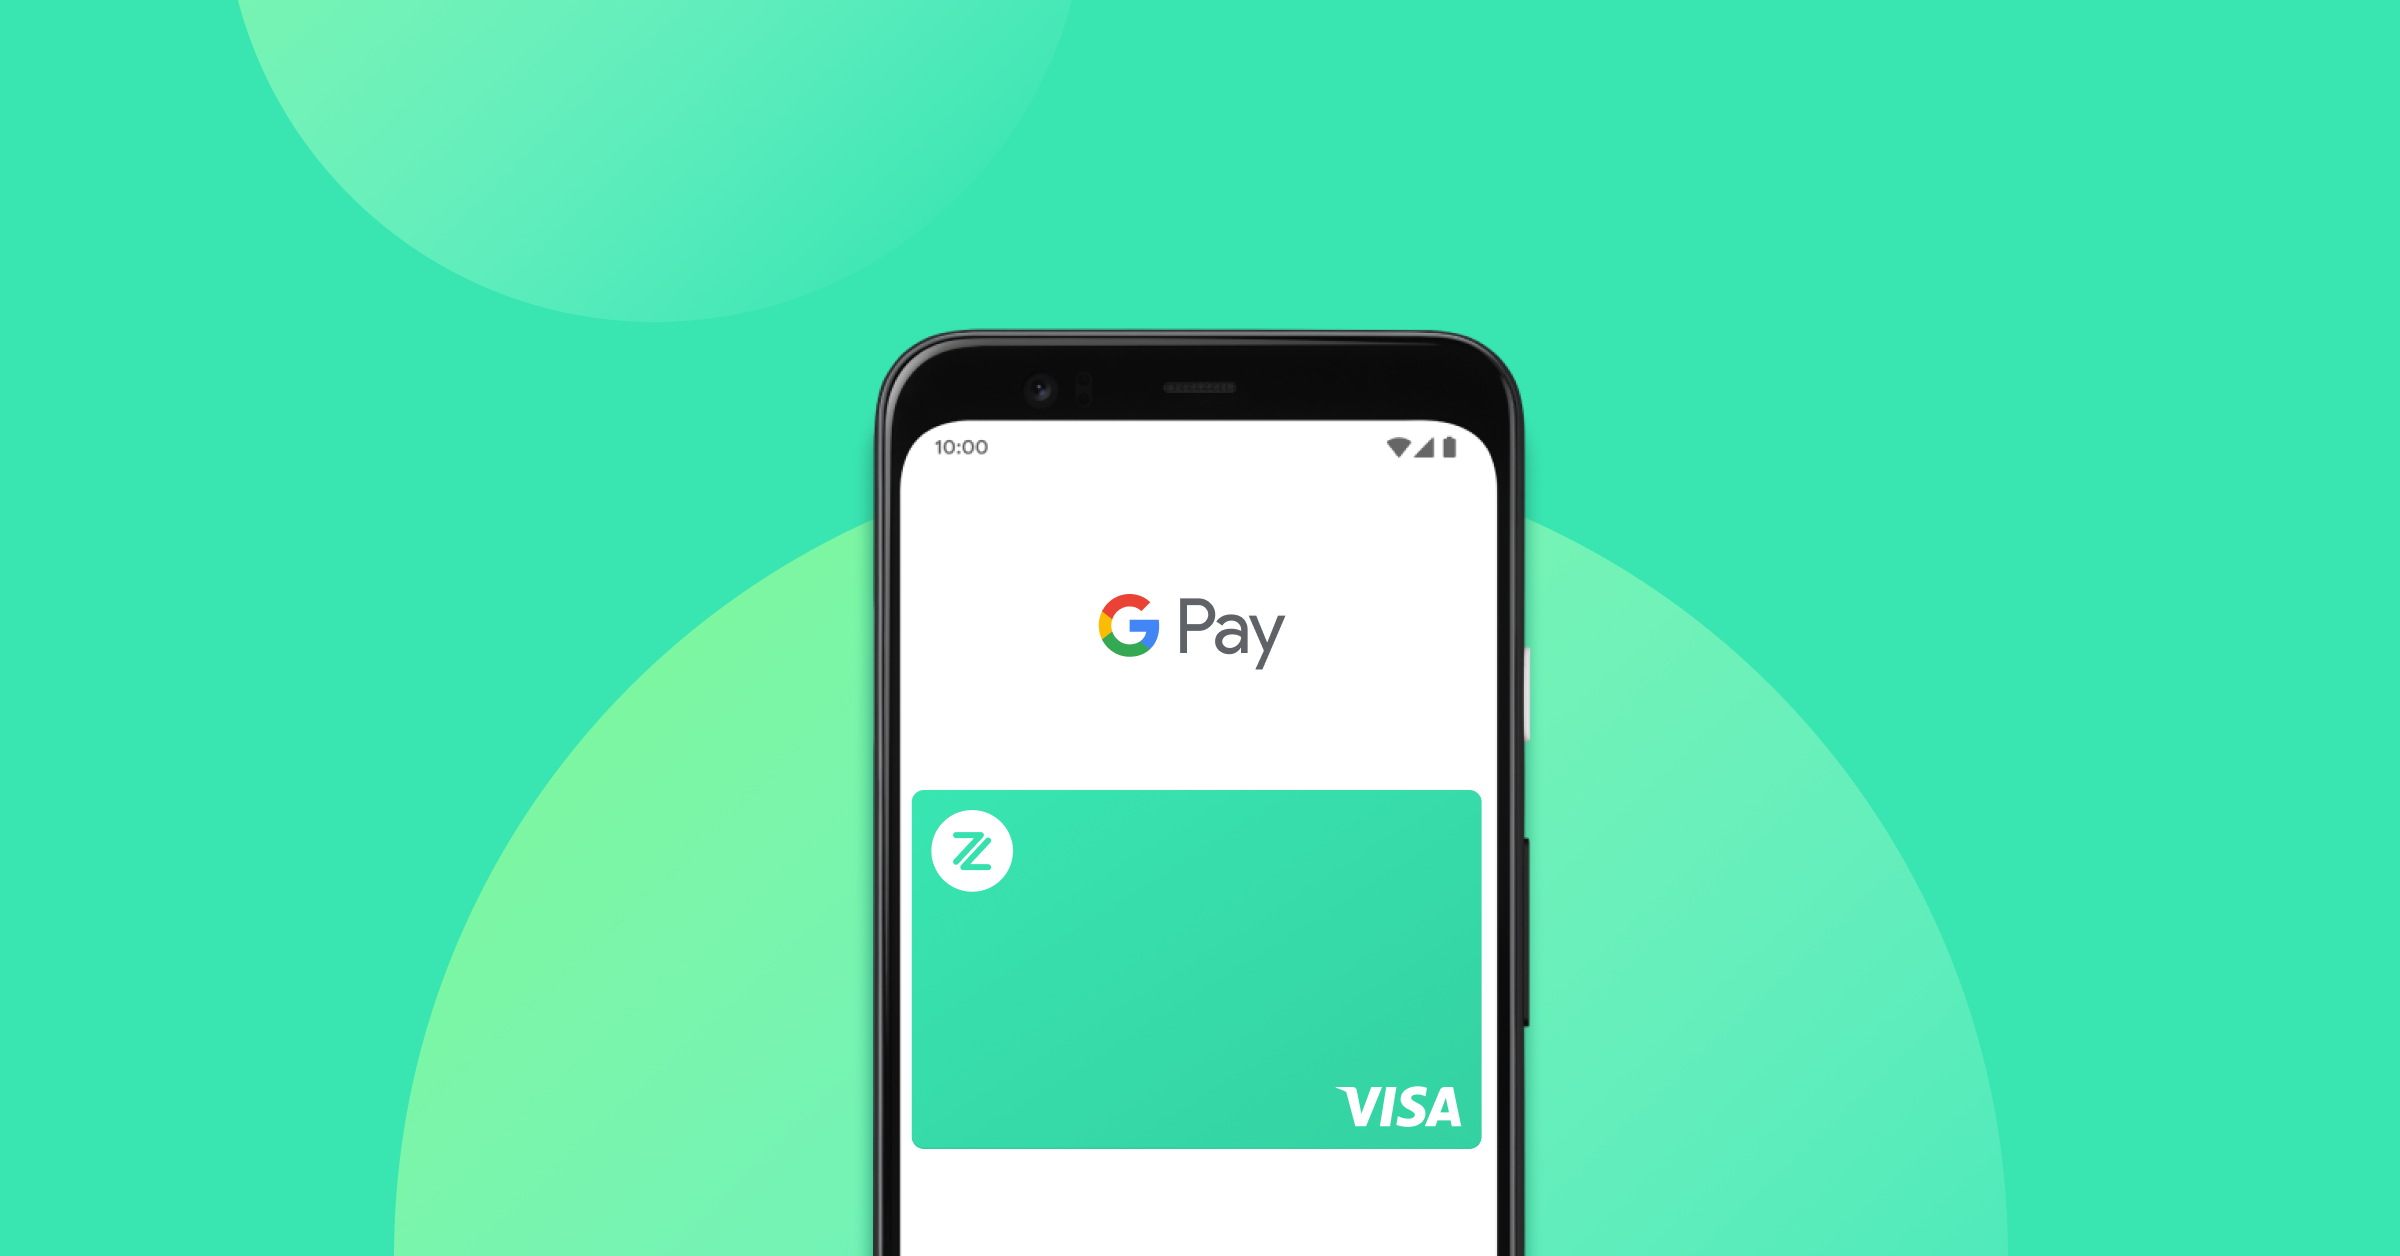 ZA Card 現已支援 Google Pay  